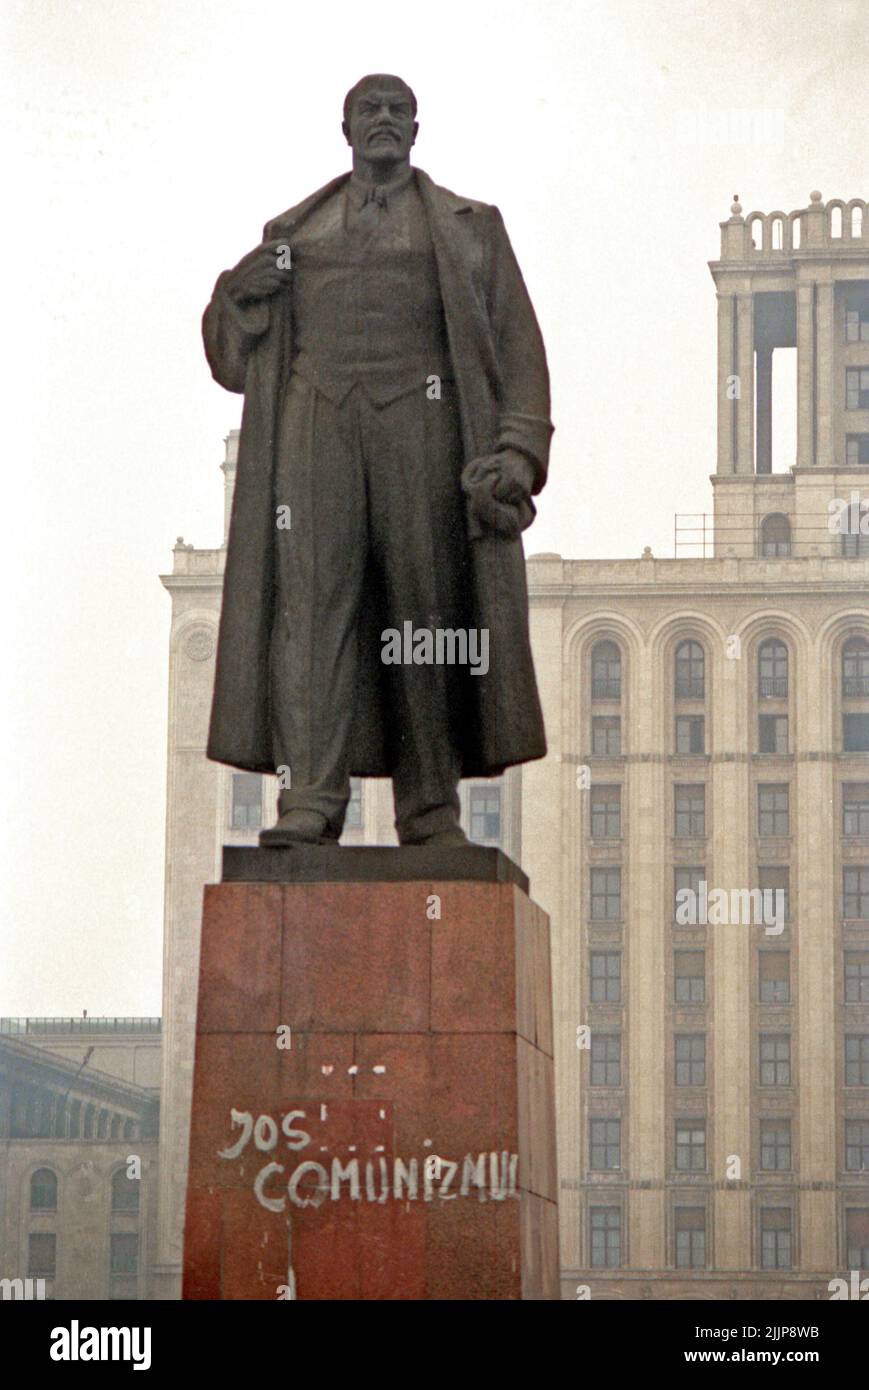 Bucarest, Romania, gennaio 1990. Sul piedistallo della statua di Lenin qualcuno scrisse "Down with comunism" nei giorni successivi alla rivoluzione anticomunista rumena del dicembre 1989, un gesto impensabile prima di quel tempo. La statua era in piedi a Piata Scanteii (la Spark Plazza) dal 1960, e fu infine stornata nel marzo 1990. Foto Stock